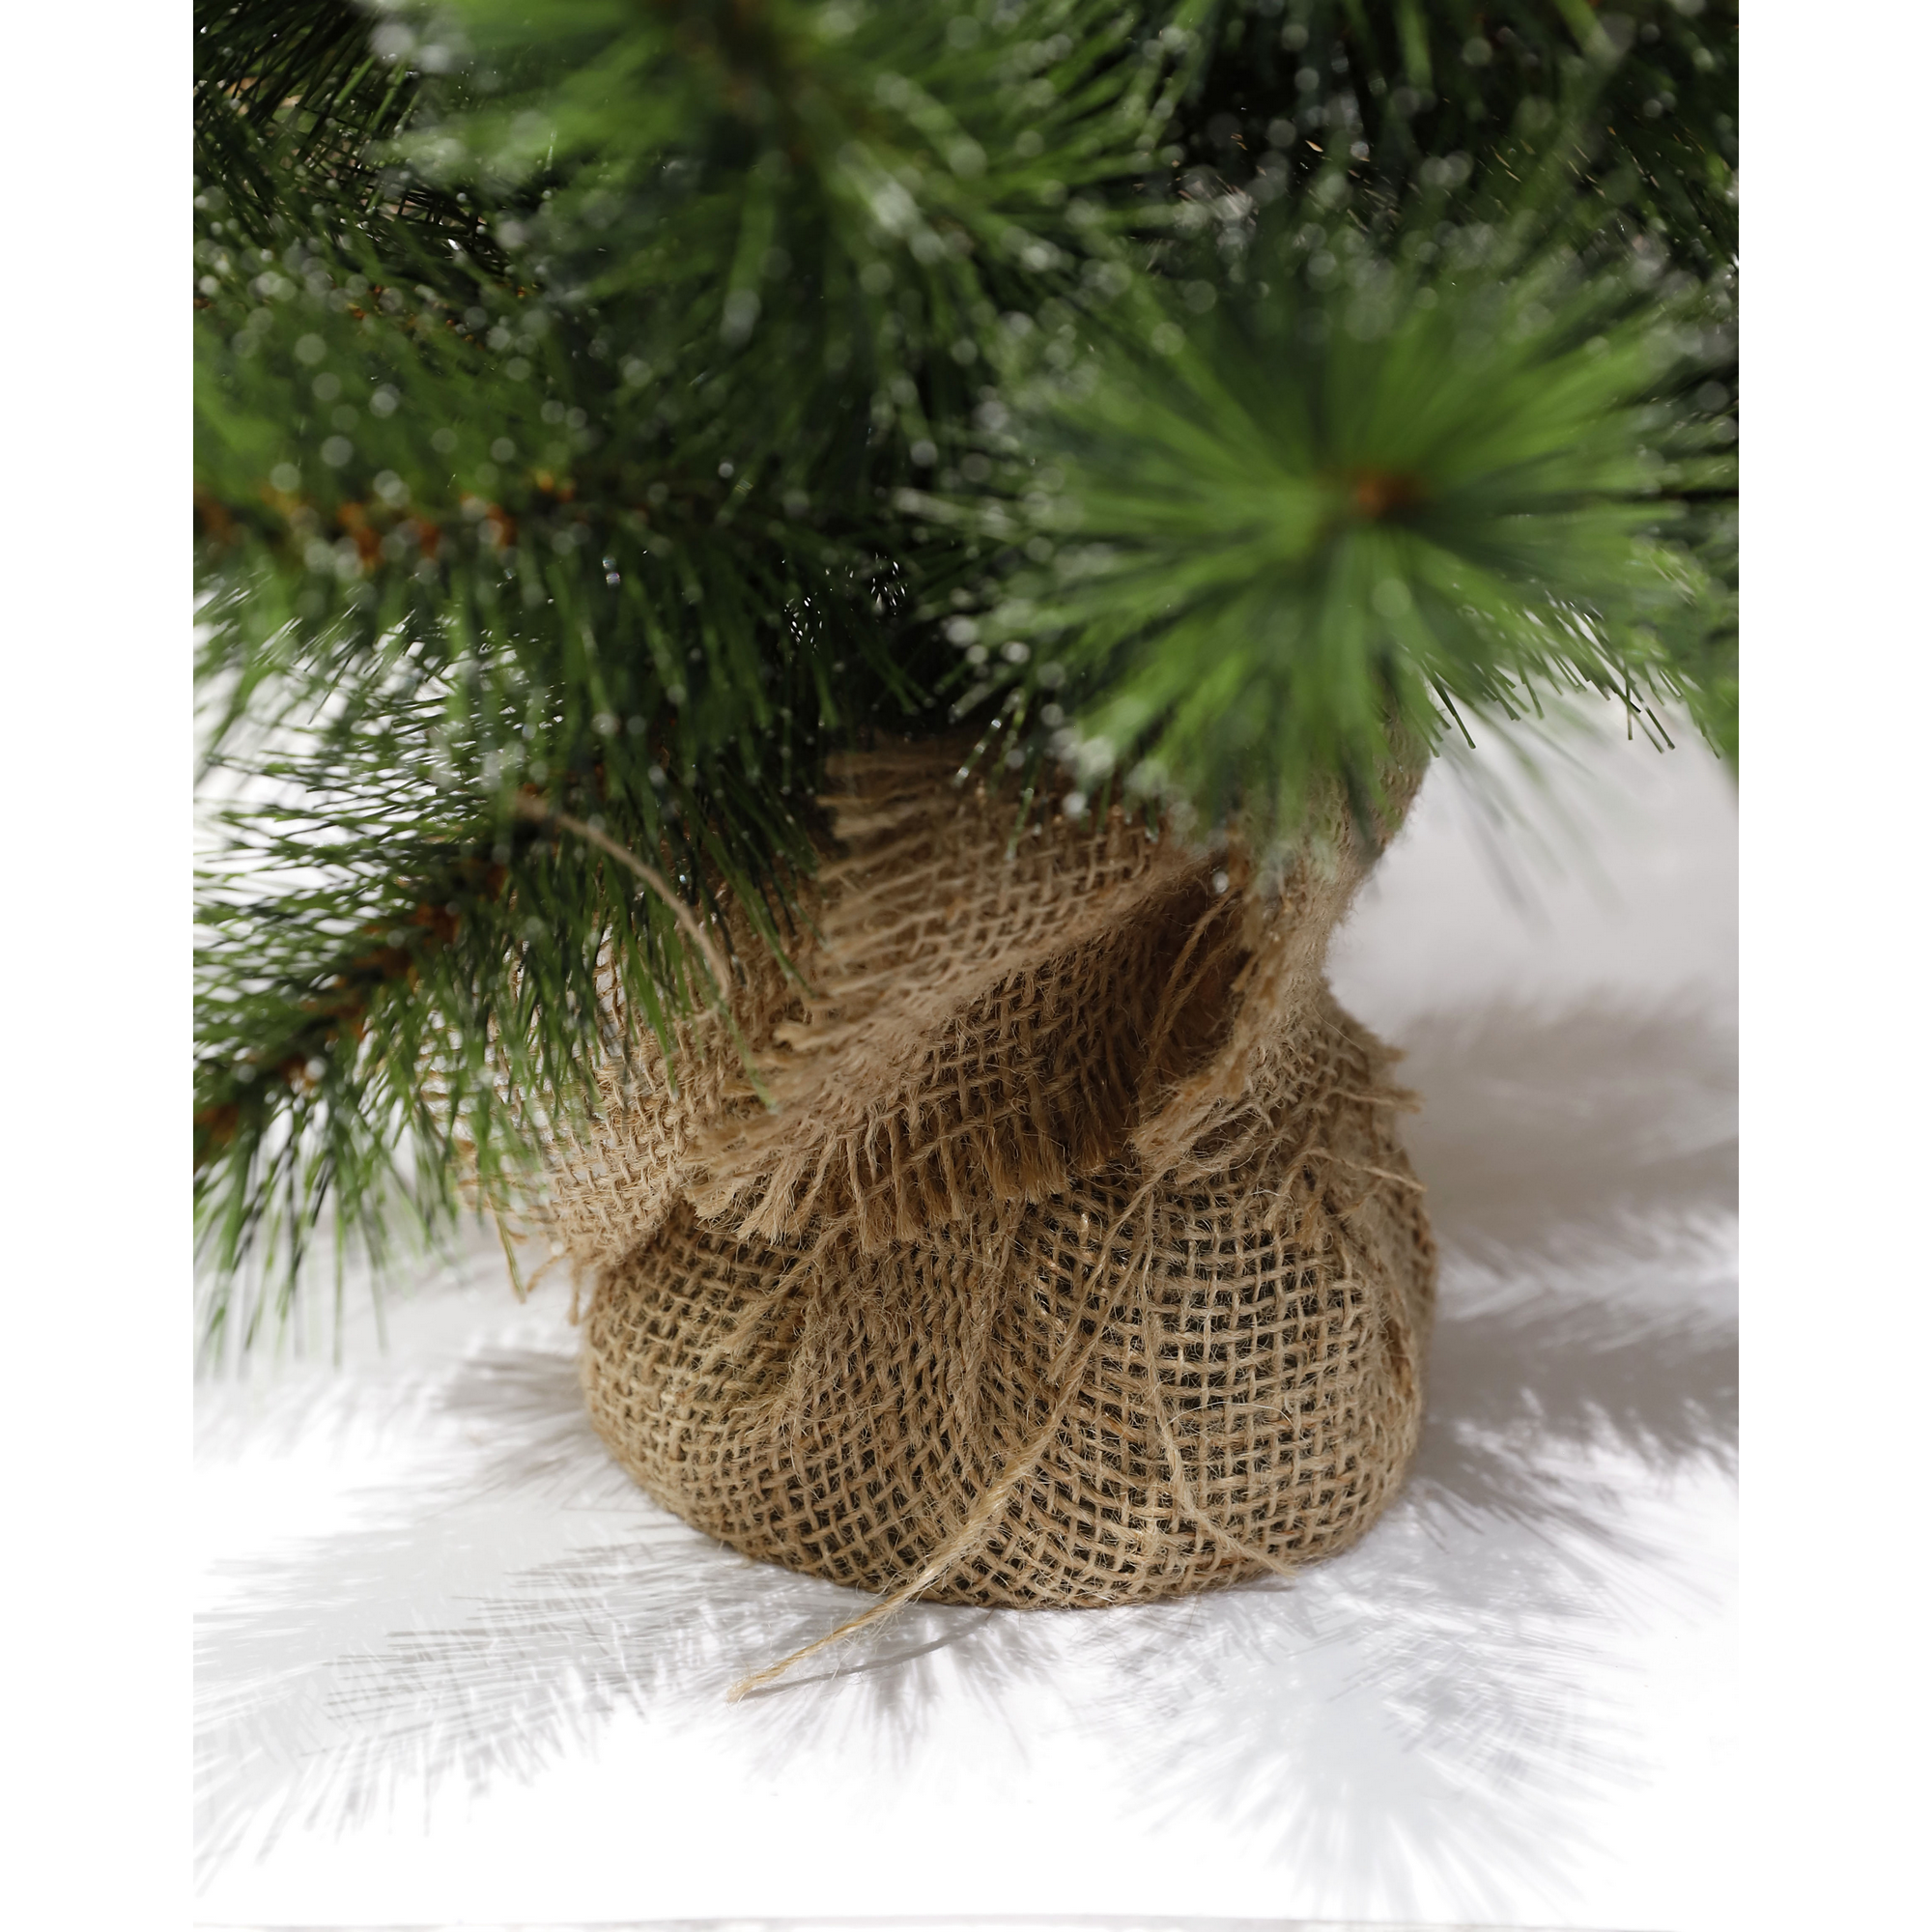 Künstlicher Weihnachtsbaum 'Jasper' grün 45 cm mit LED-Beleuchtung + product picture